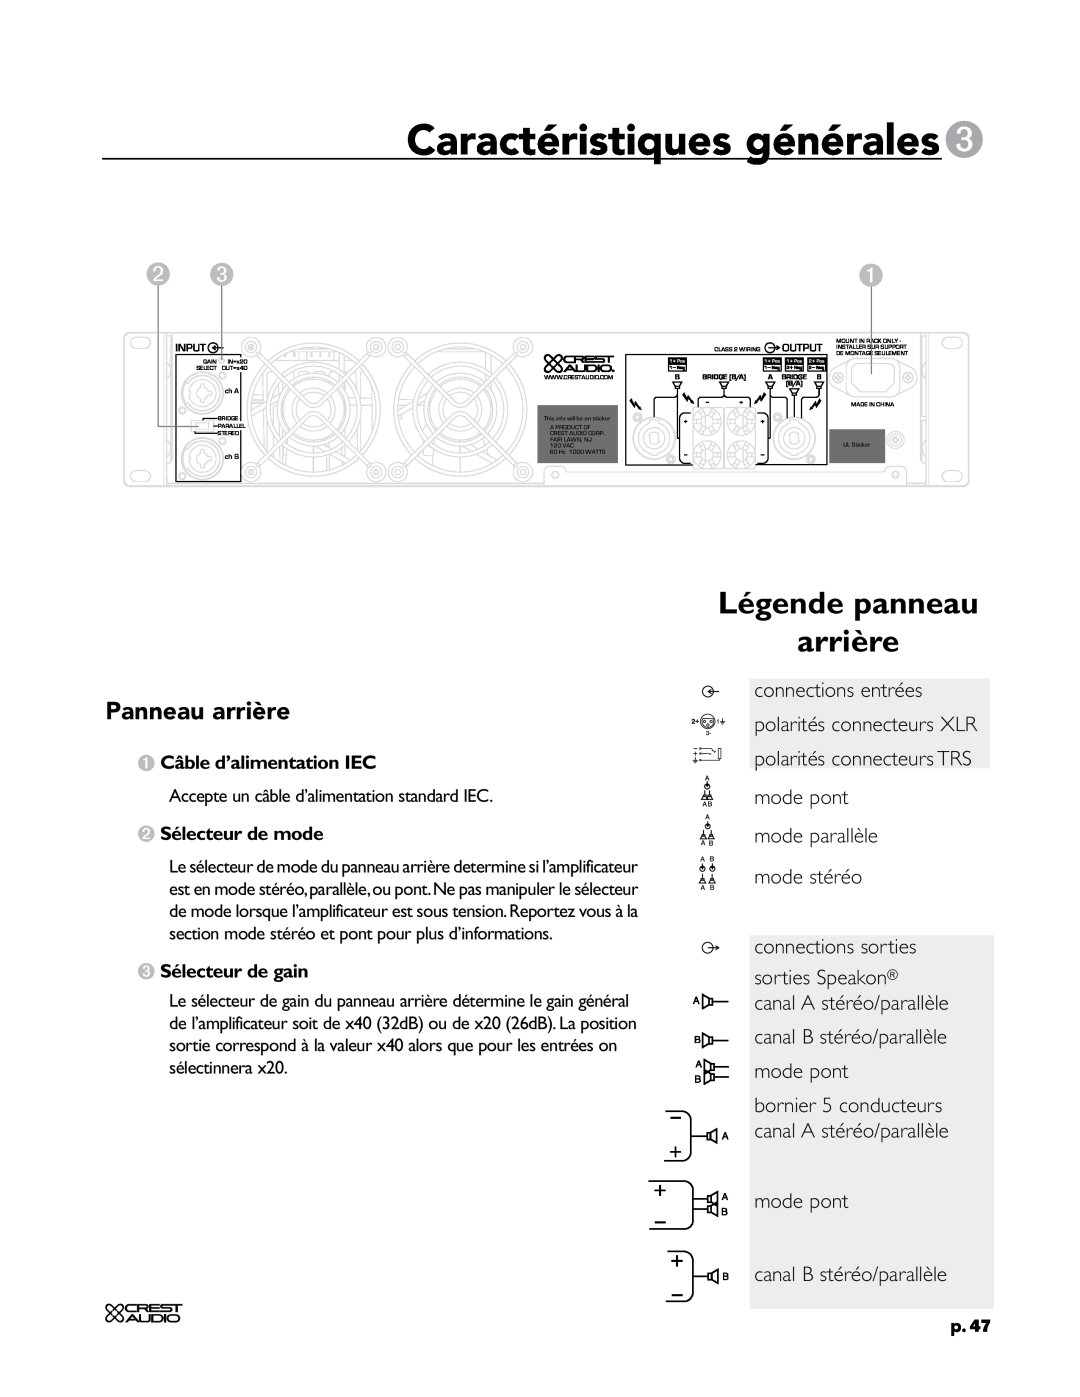 Crest Audio CC 1800 Caractéristiques générales3, Légende panneau arrière, Panneau arrière, connections sorties, p.47, ch A 